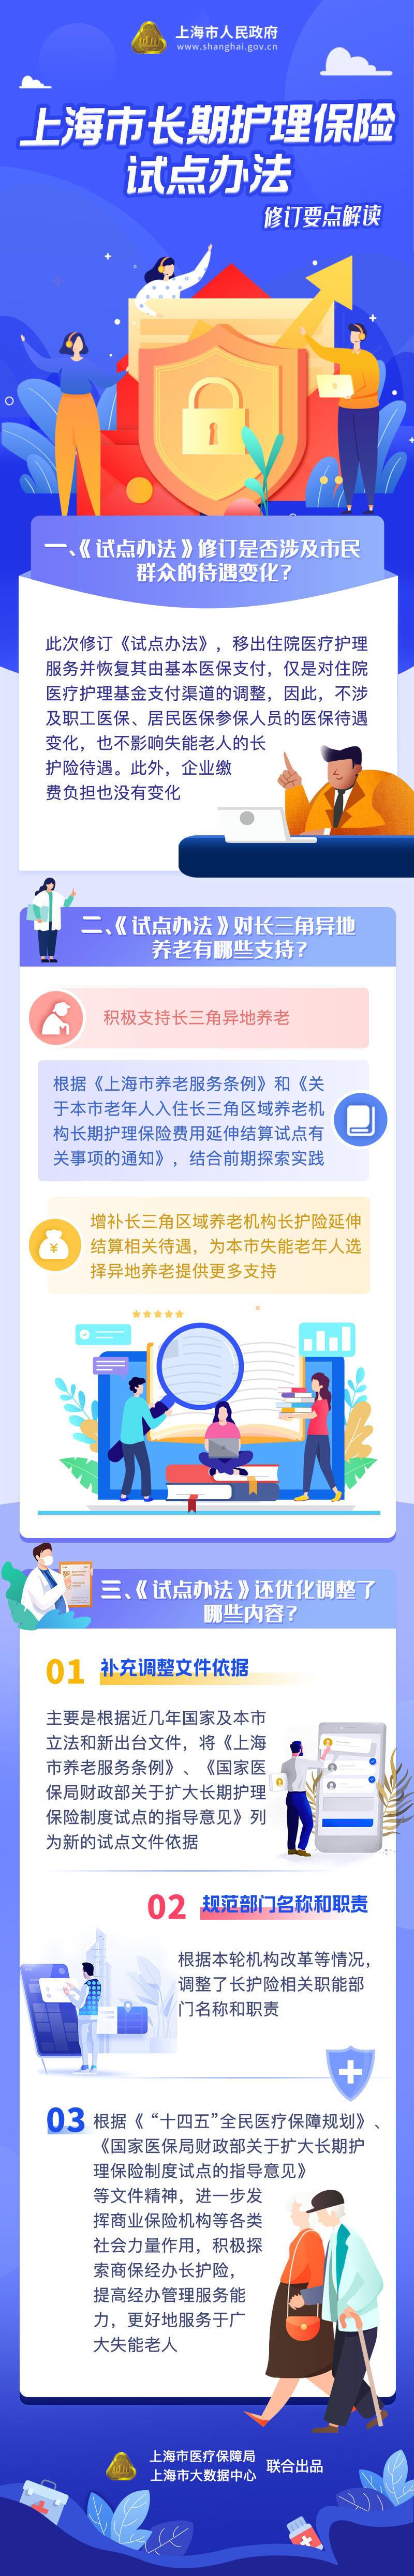 《上海市长期护理保险试点办法》修订要点解读.jpg